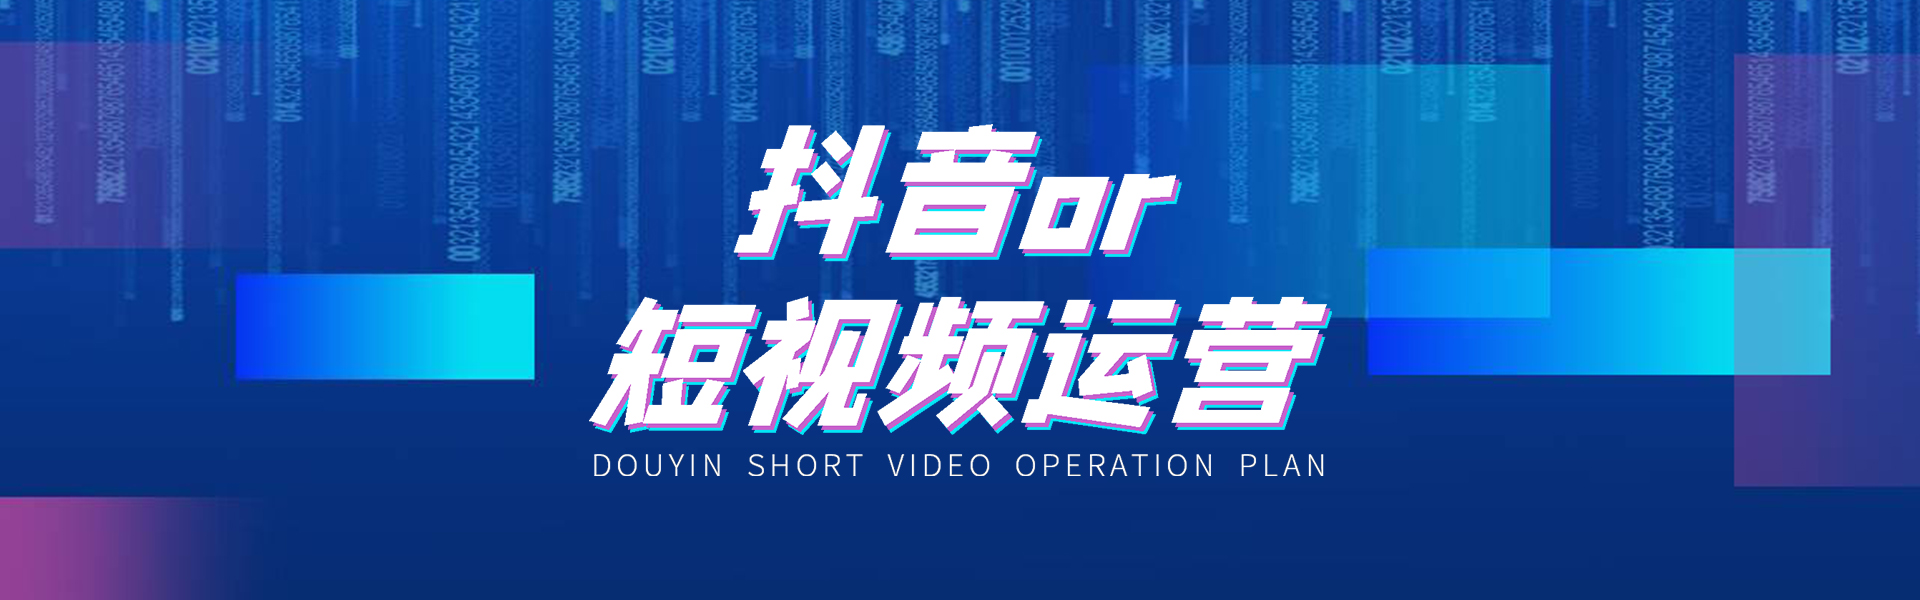 连云港抖音短视频制作,运营自媒体,让自己实现快速逆袭